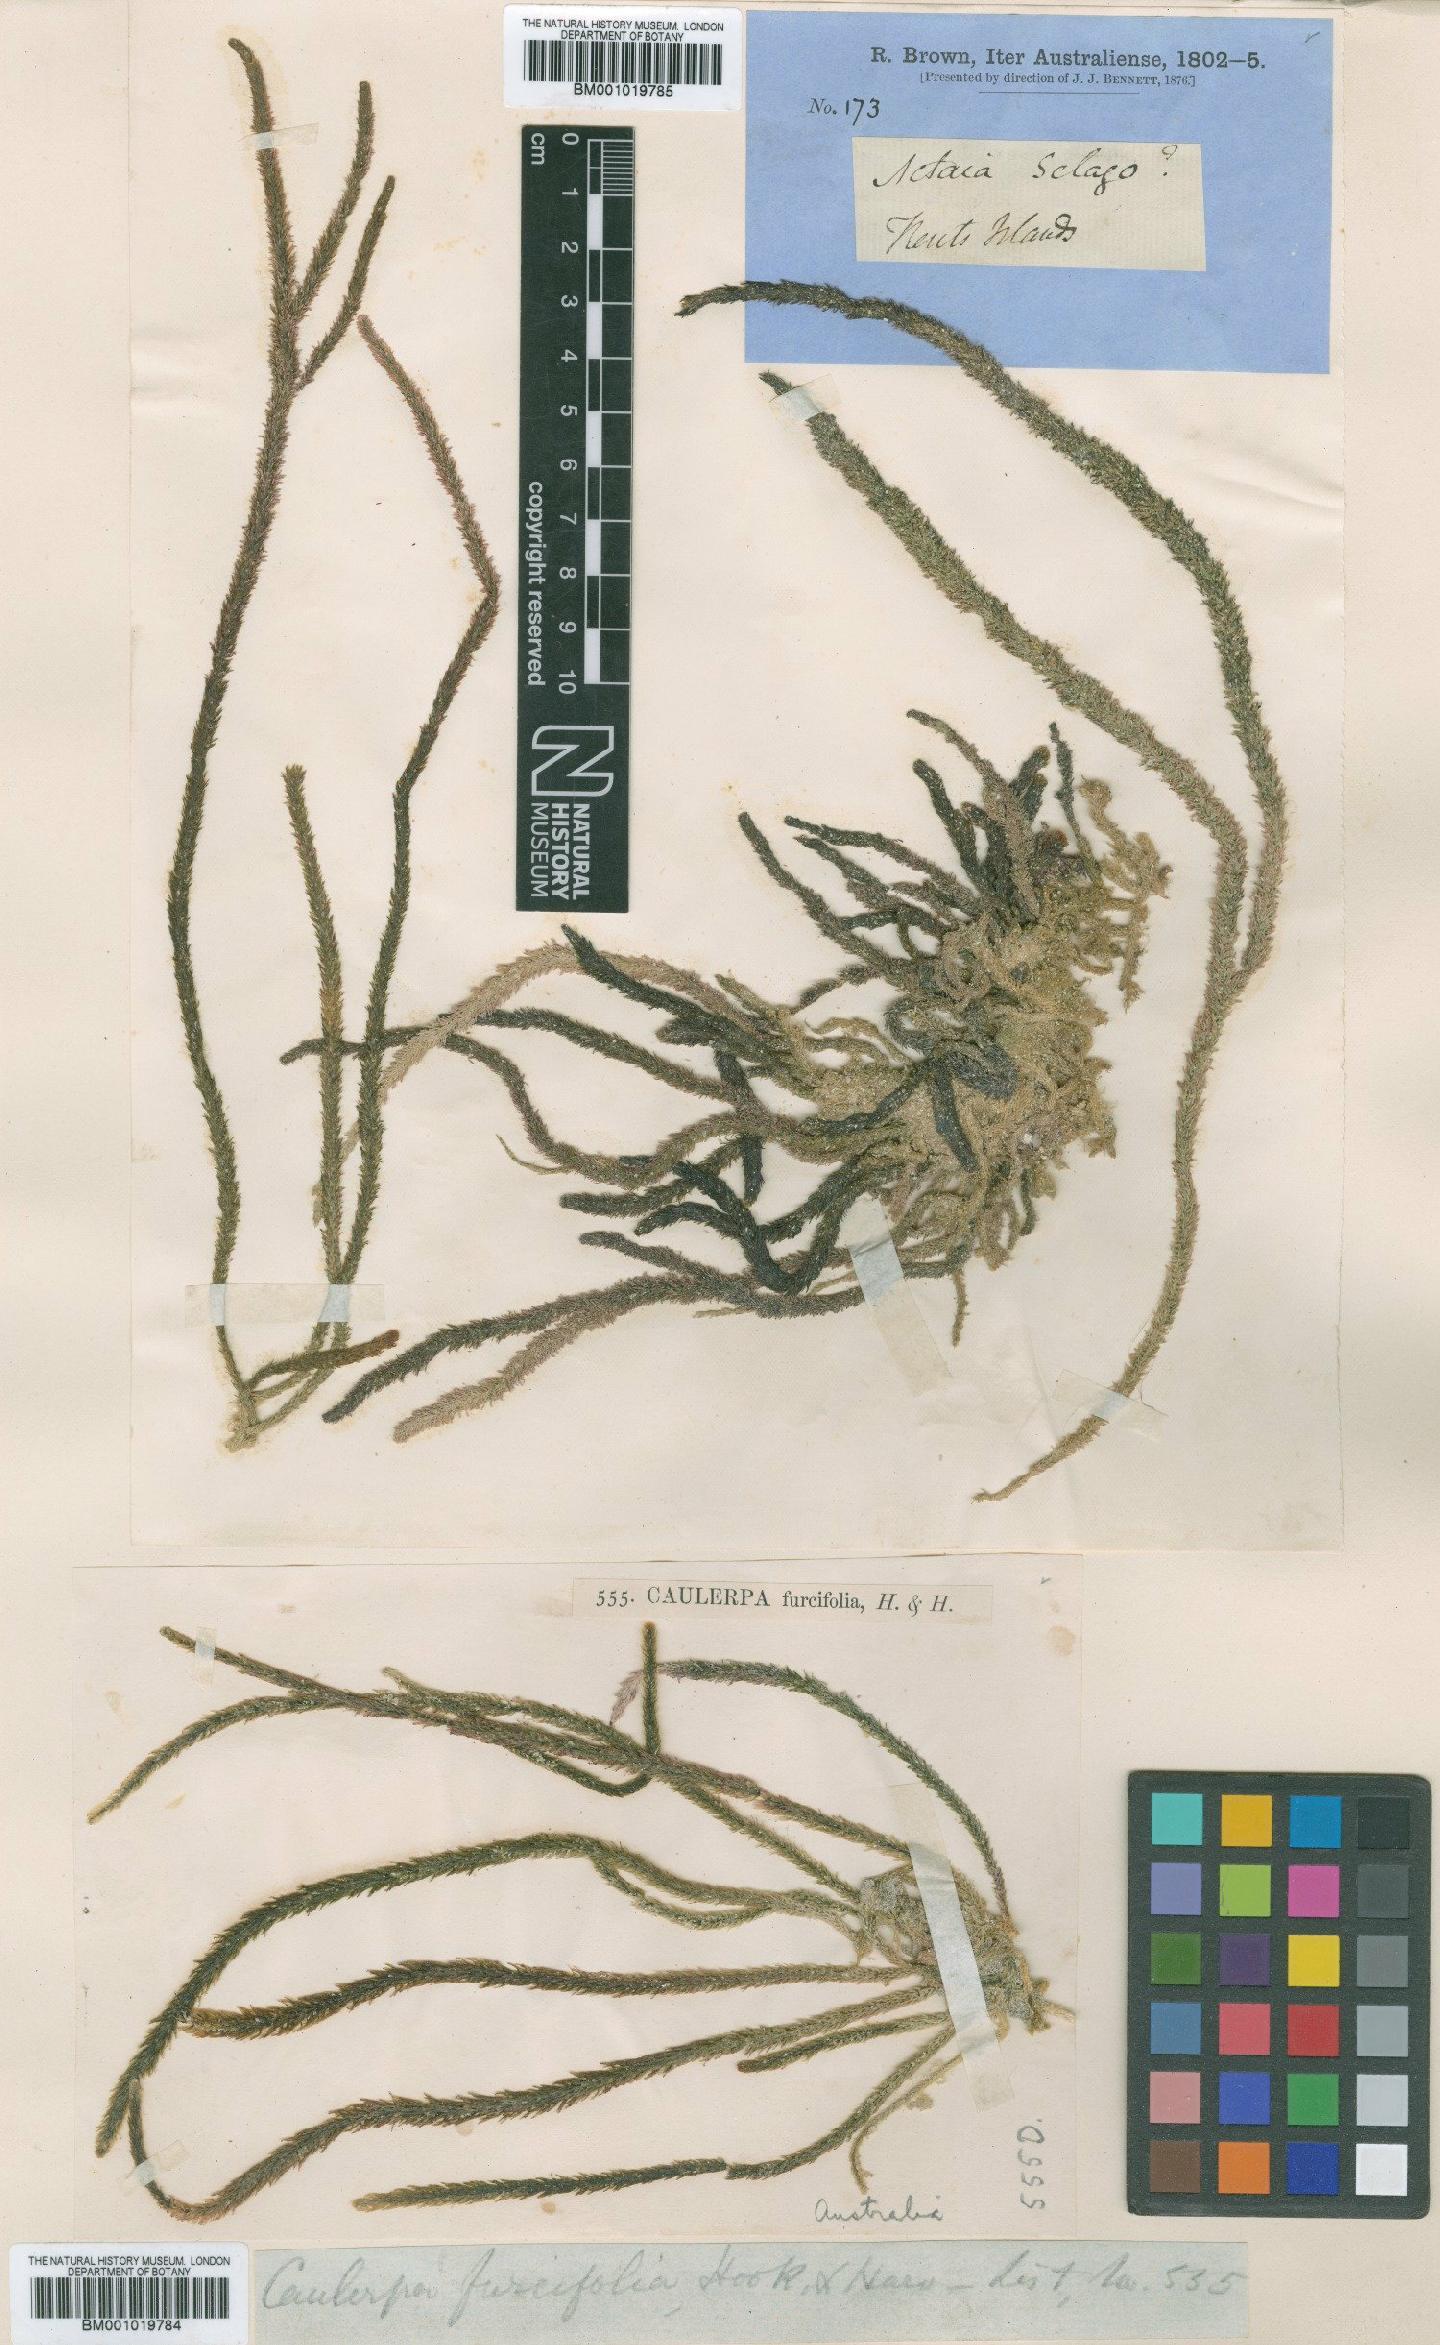 To NHMUK collection (Caulerpa brownii (Agardh) Endl.; NHMUK:ecatalogue:5015875)